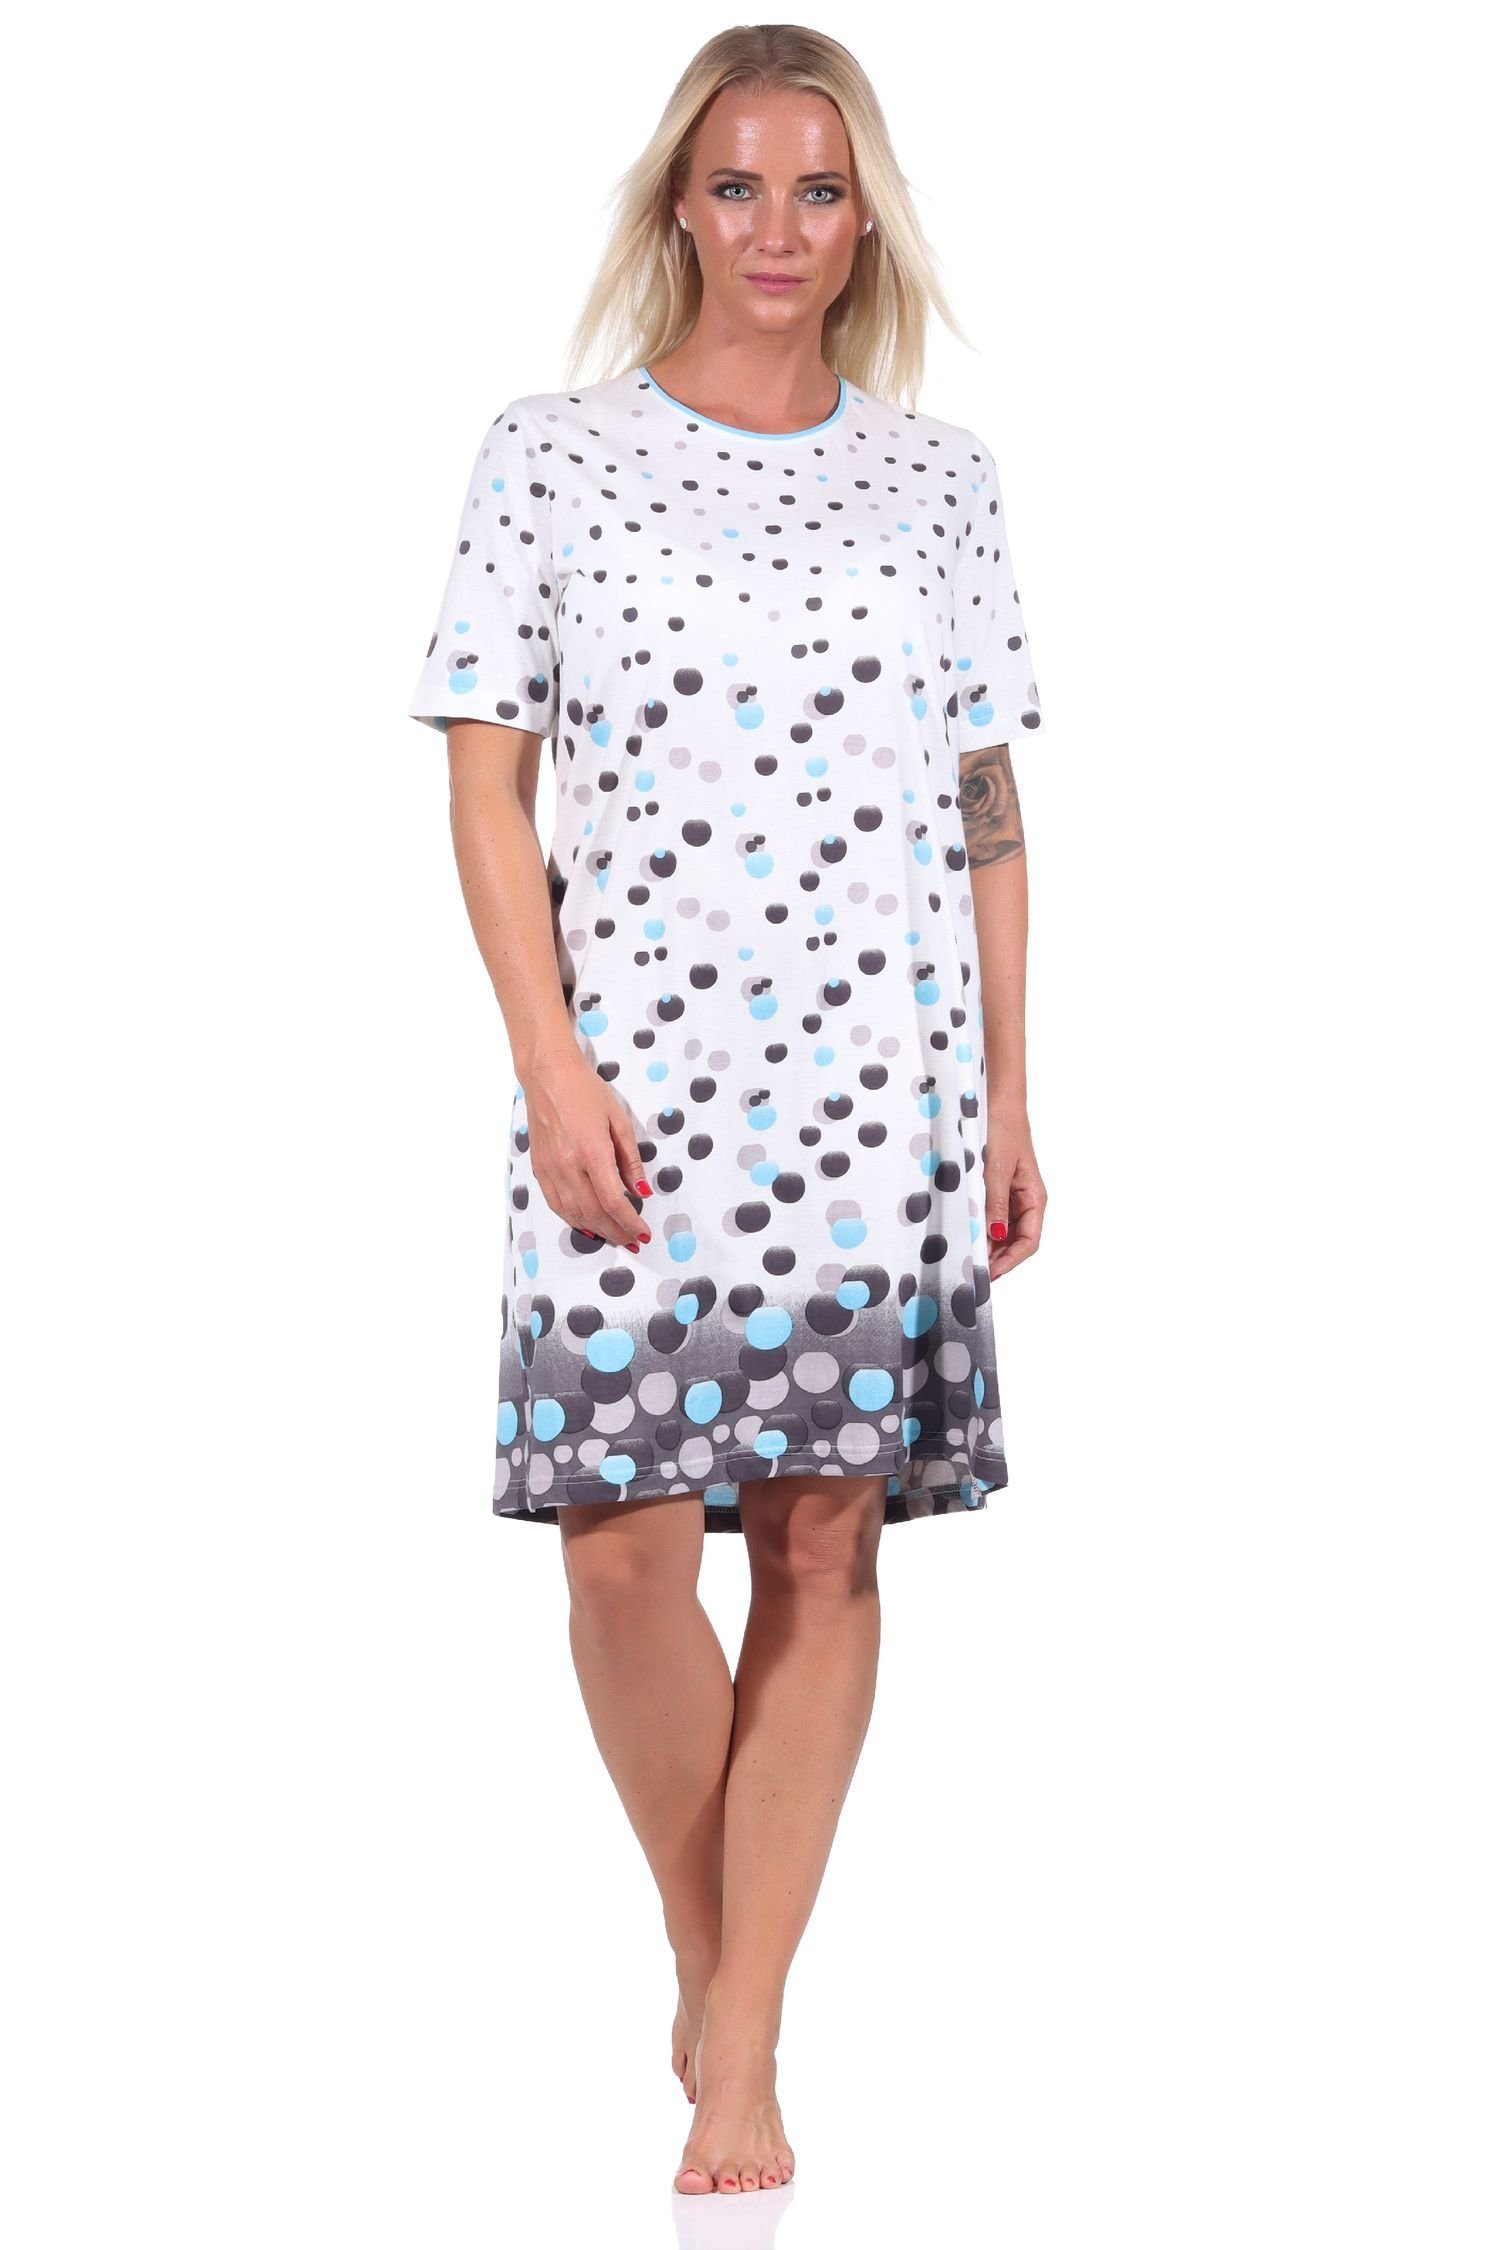 Normann Nachthemd Damen kurzarm Nachthemd in Tupfen-Punkte Optik - auch in Übergrößen blau